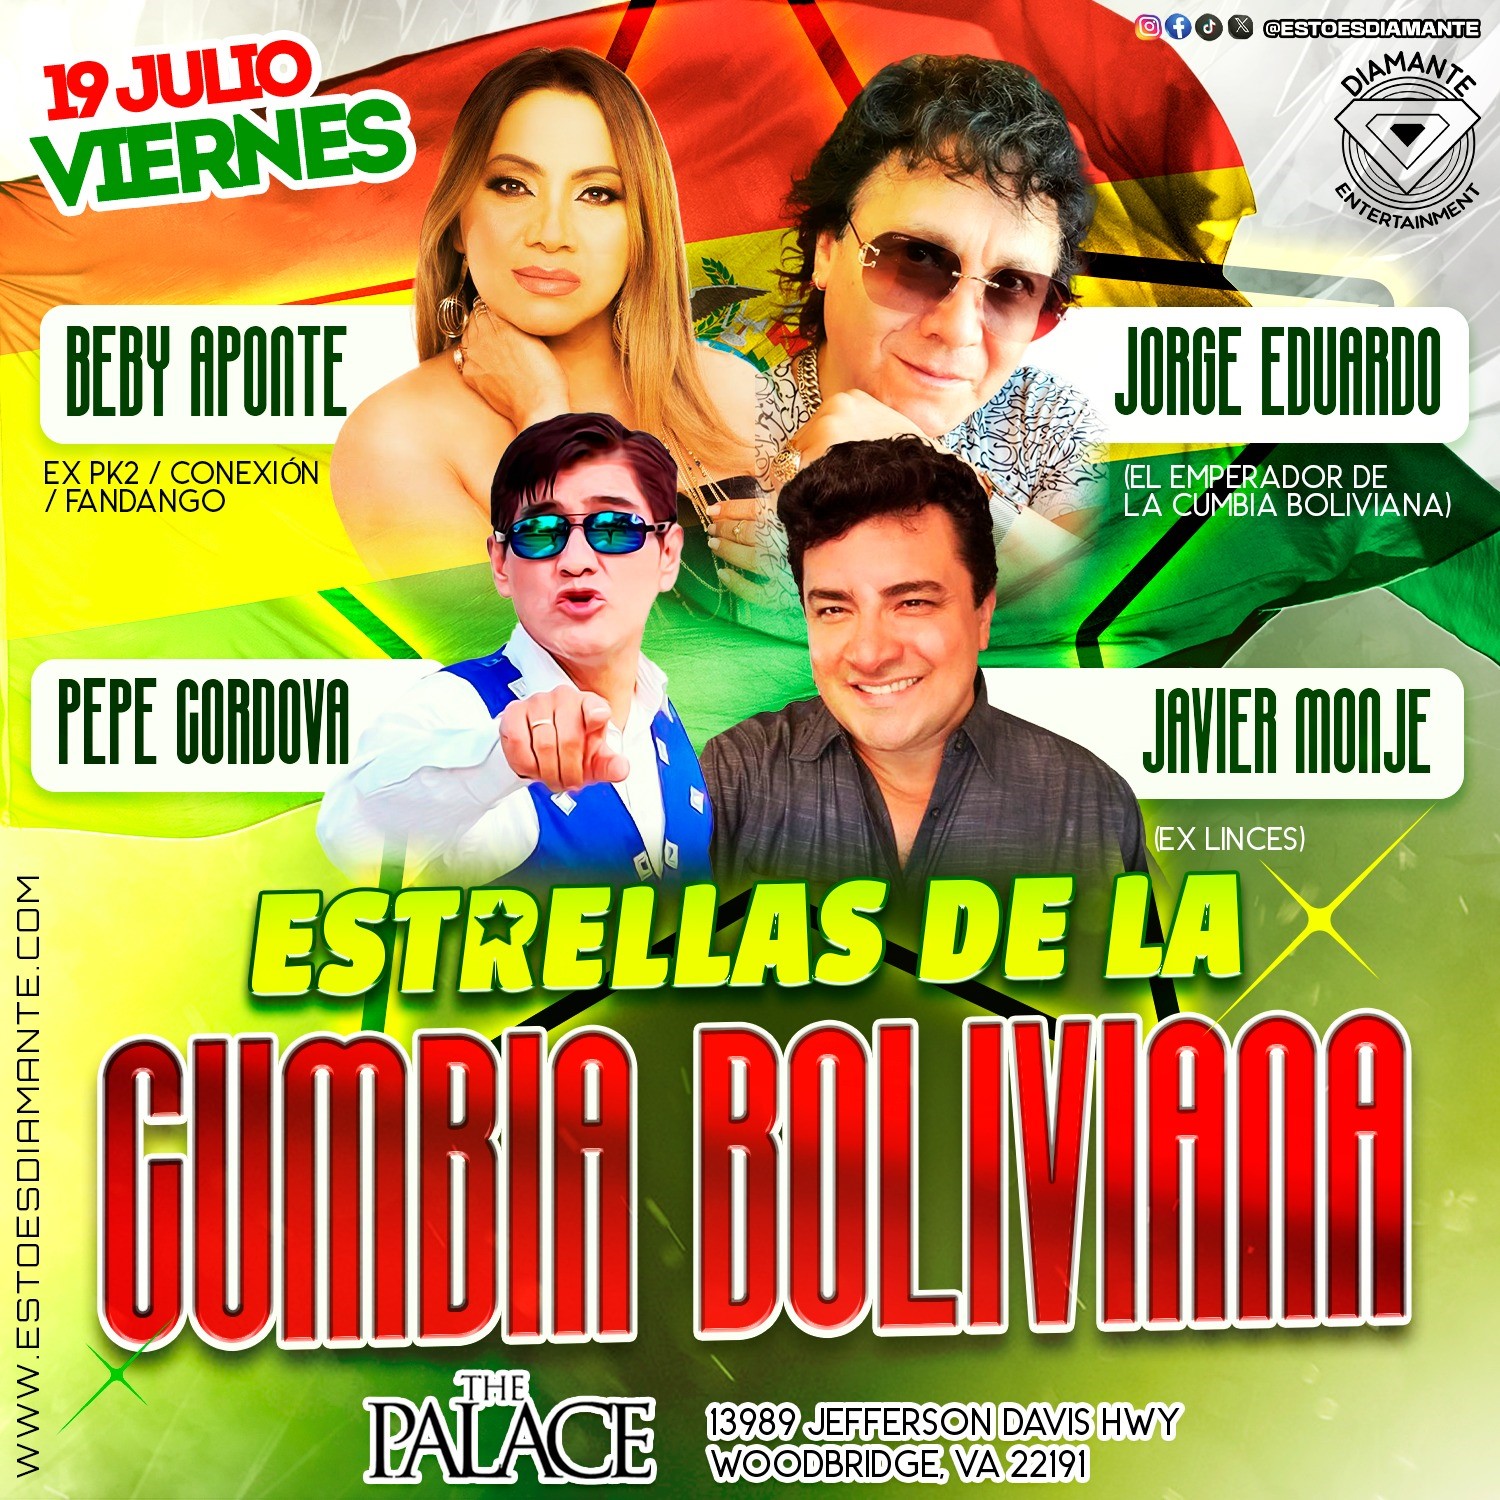 Estrellas De La Cumbia Boliviana  on juil. 19, 21:00@THE PALACE - Choisissez un siège,Achetez des billets et obtenez des informations surDiamante Entertainment 